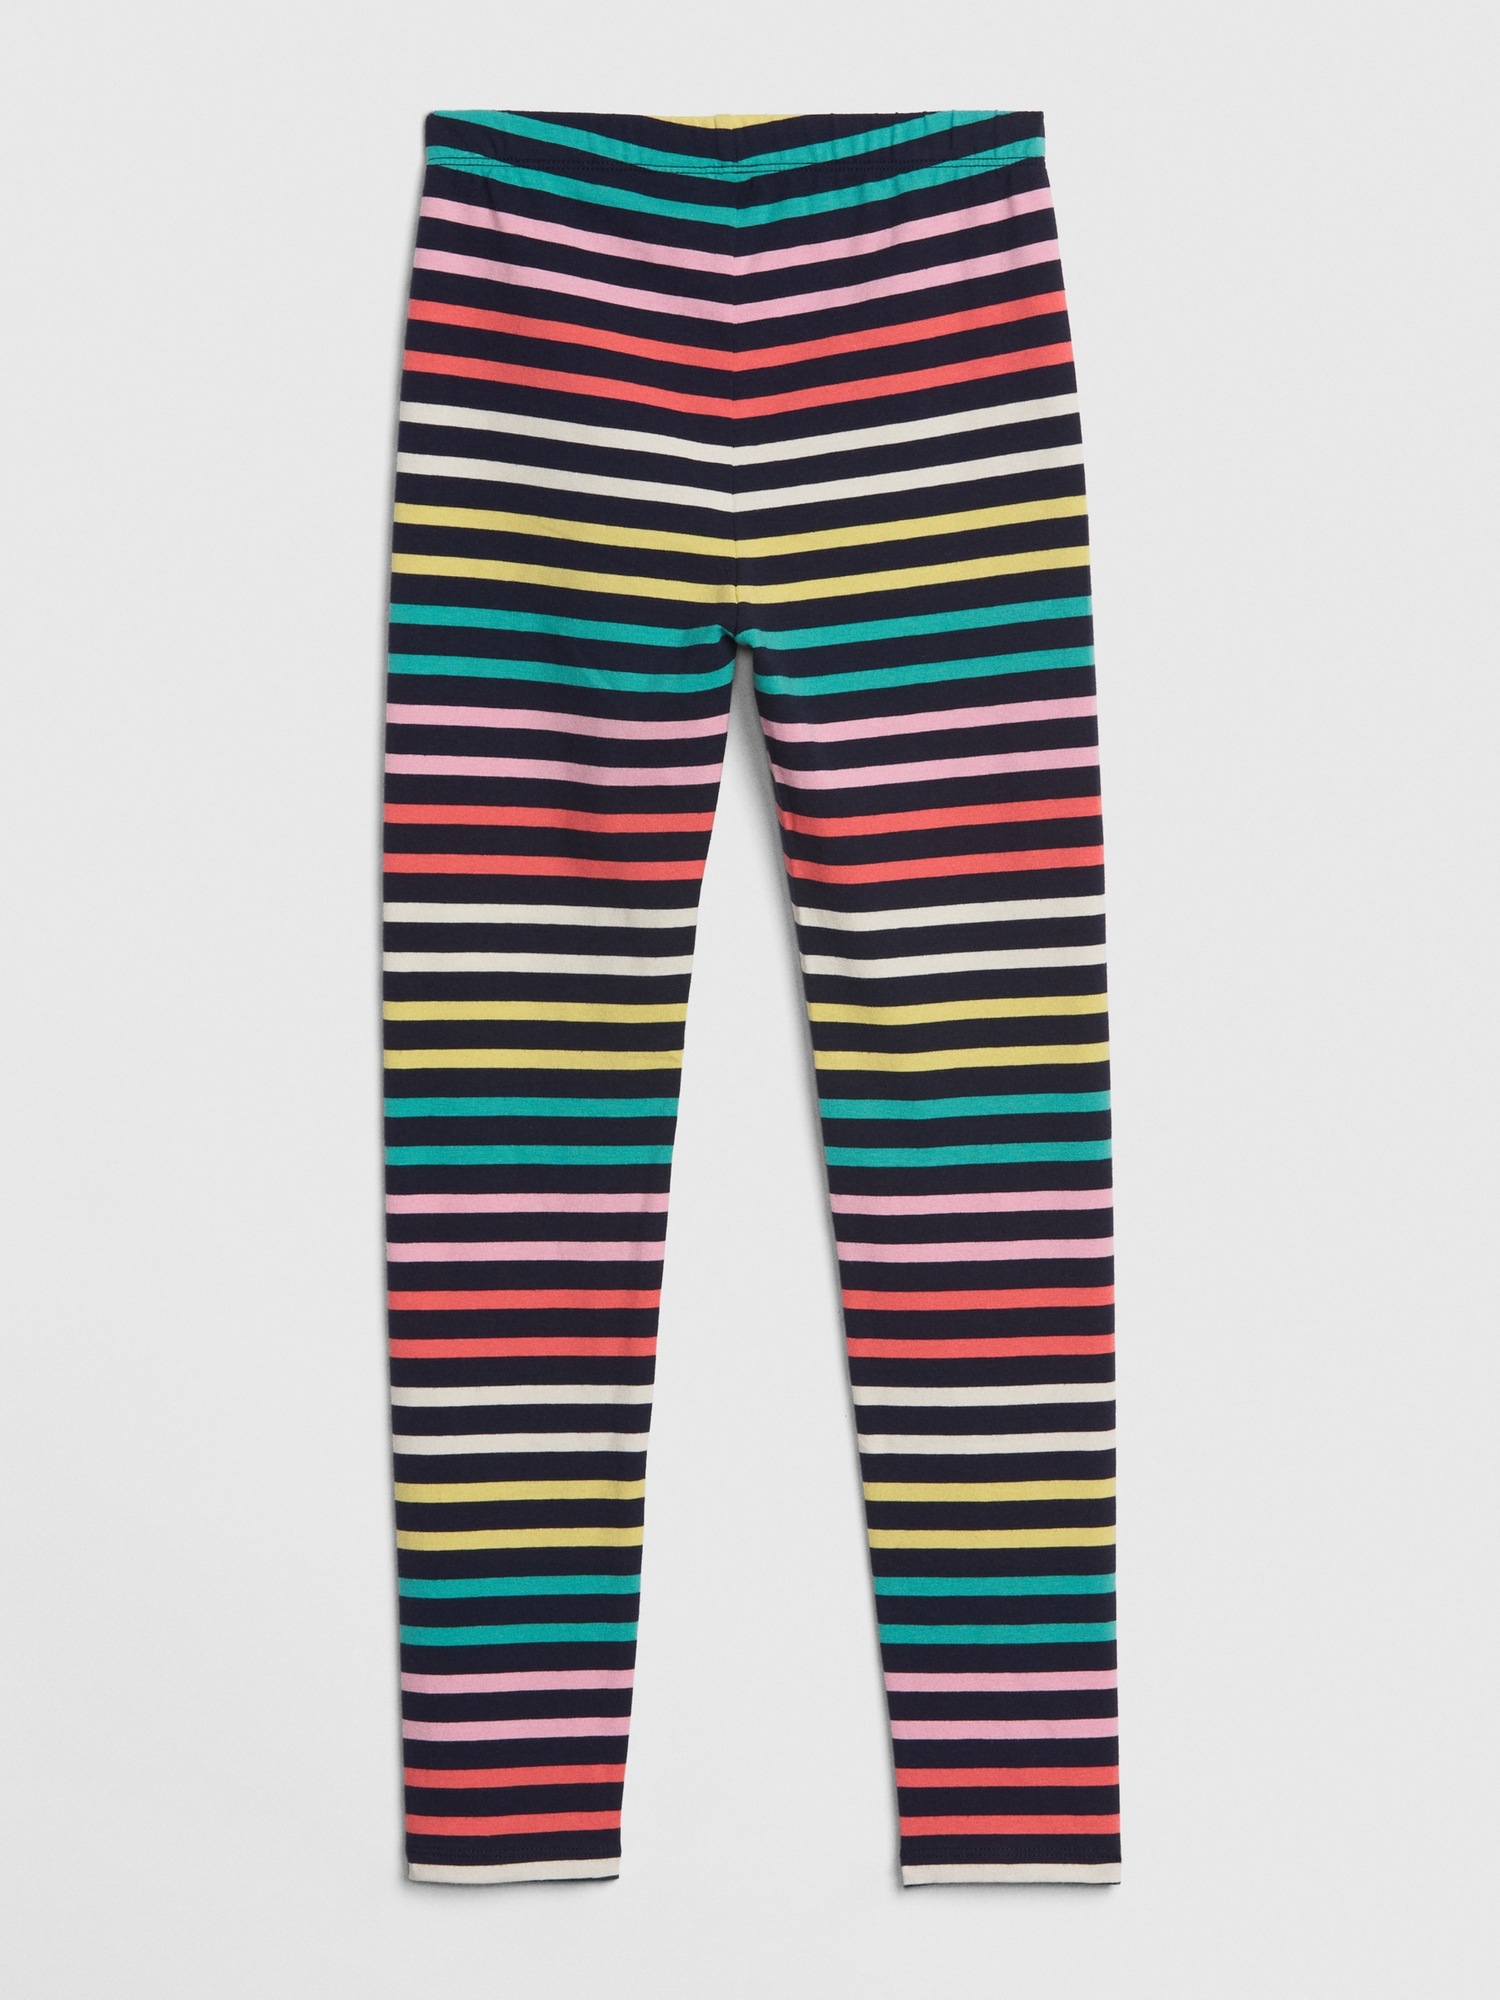 Carter's Toddler Girls Stretch Stripe Leggings | Foxvalley Mall